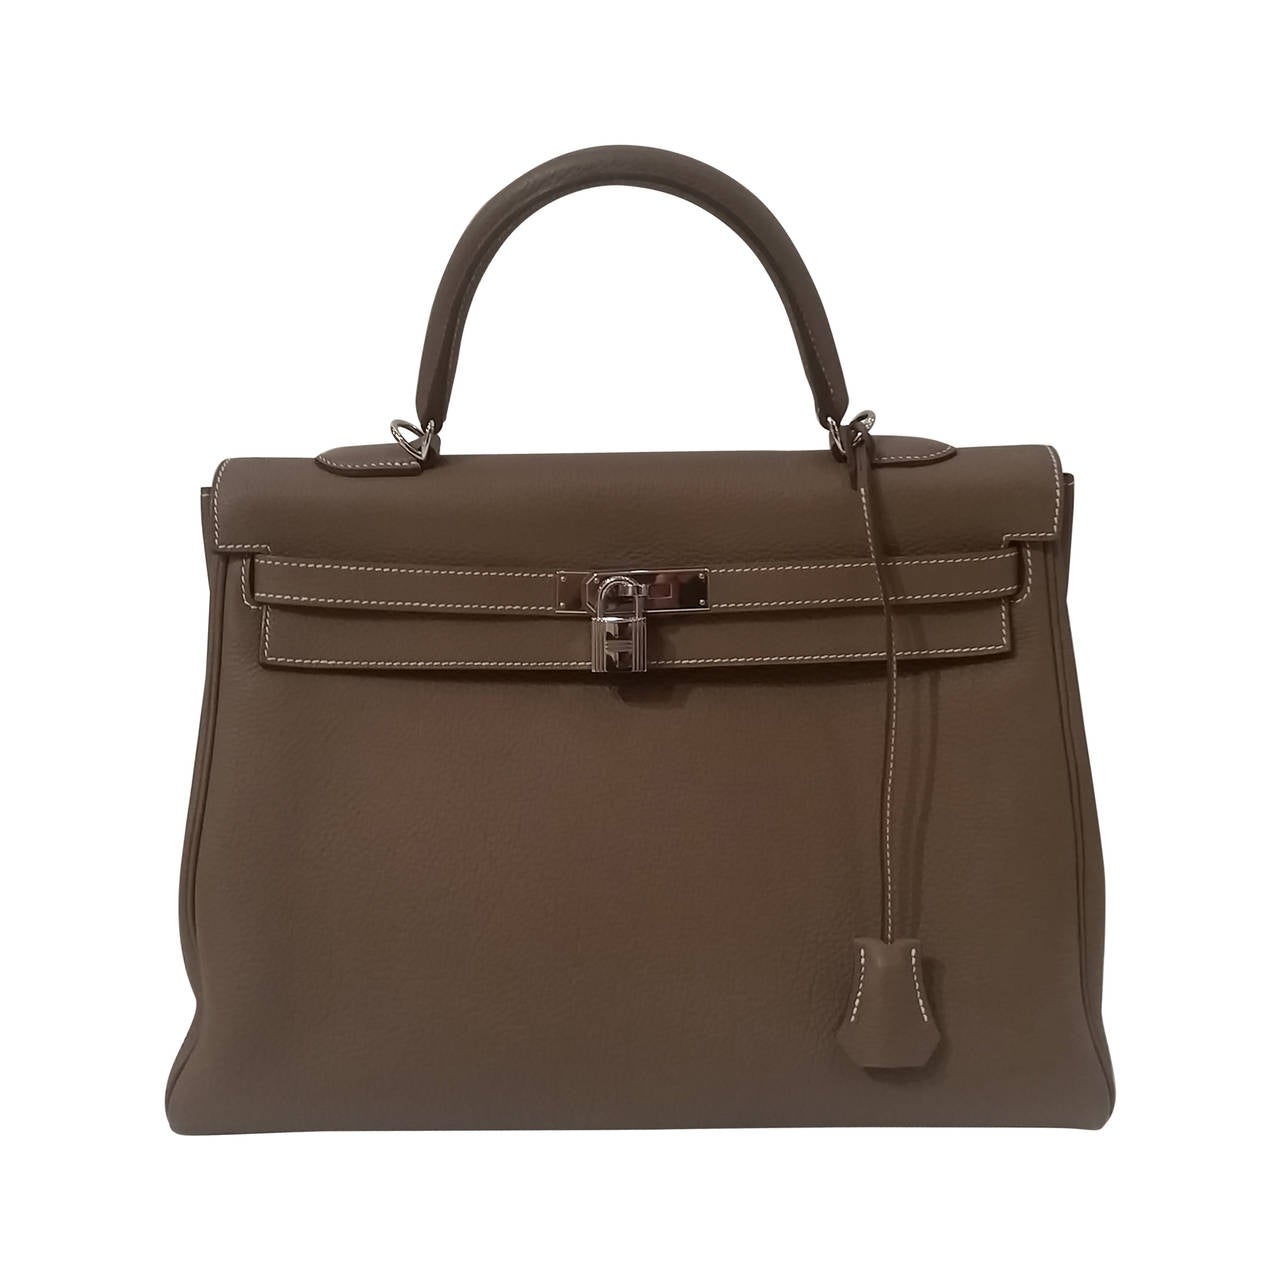 2013s Hemres Kelly 35cm etoupe leather bag / Foulard Magic Kelly